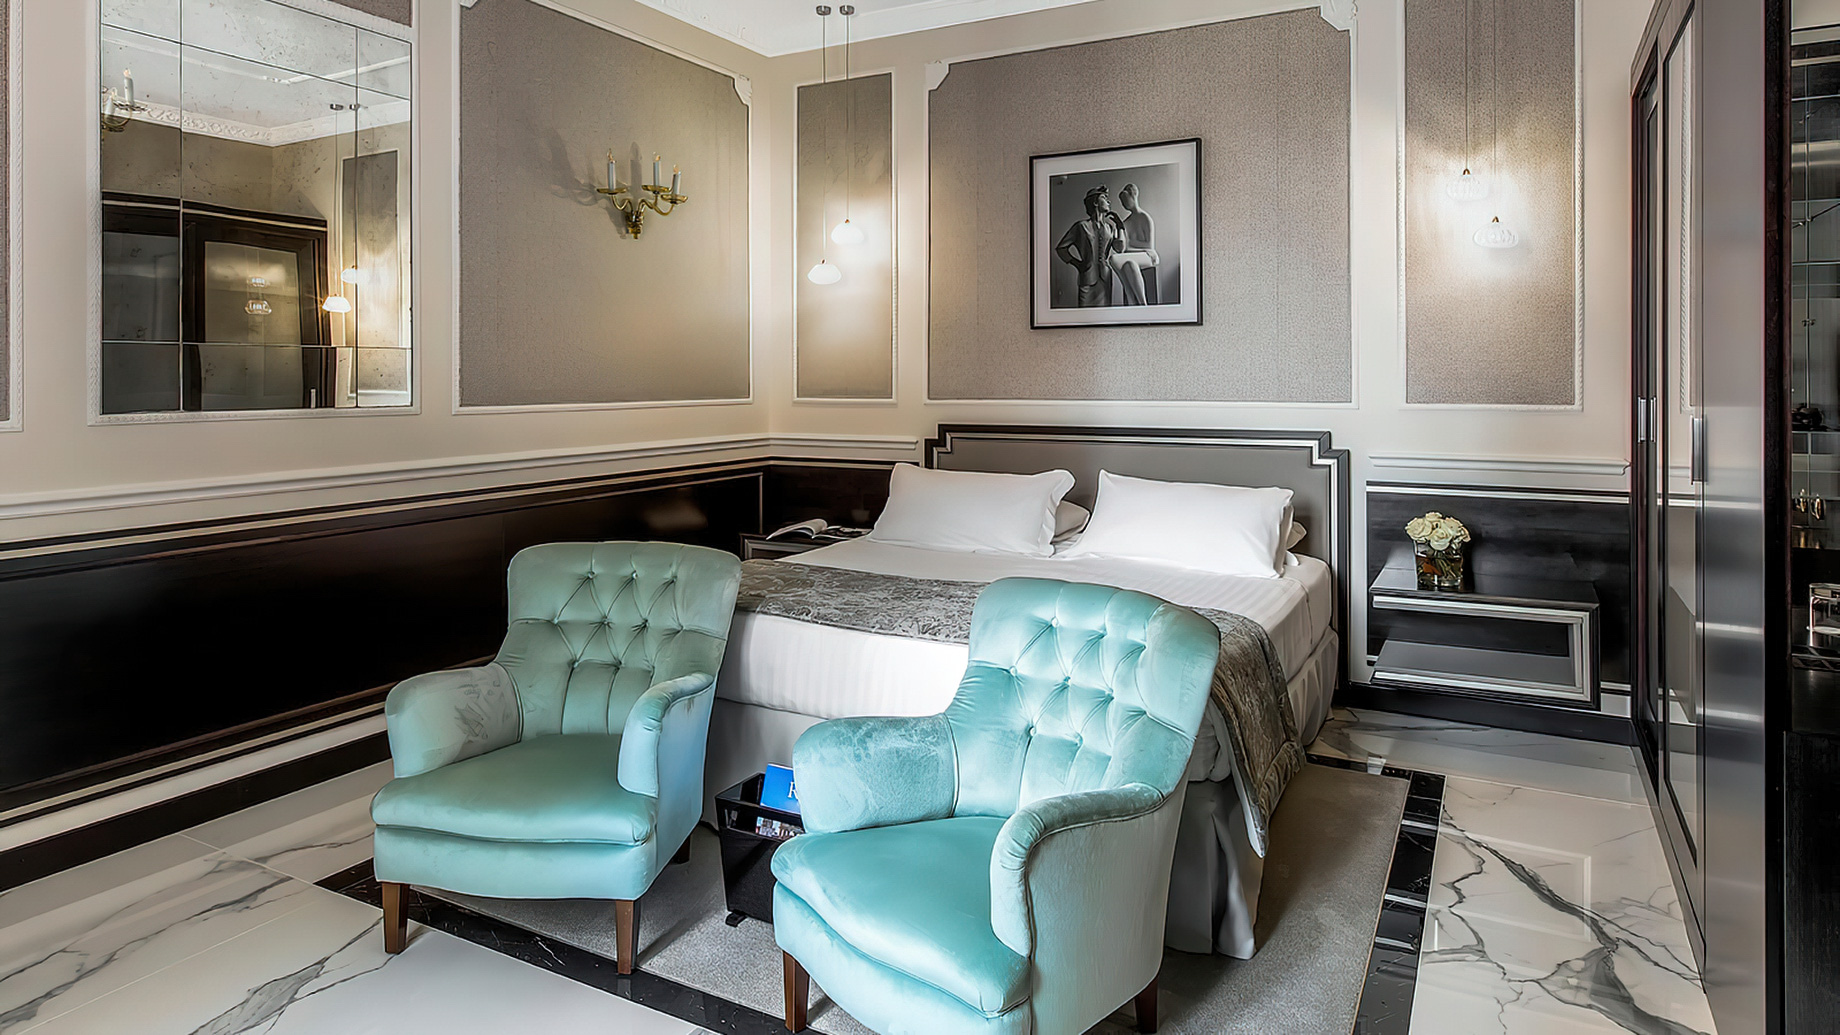 Baglioni Hotel Regina, Roma – Rome, Italy – Grand Deluxe Room